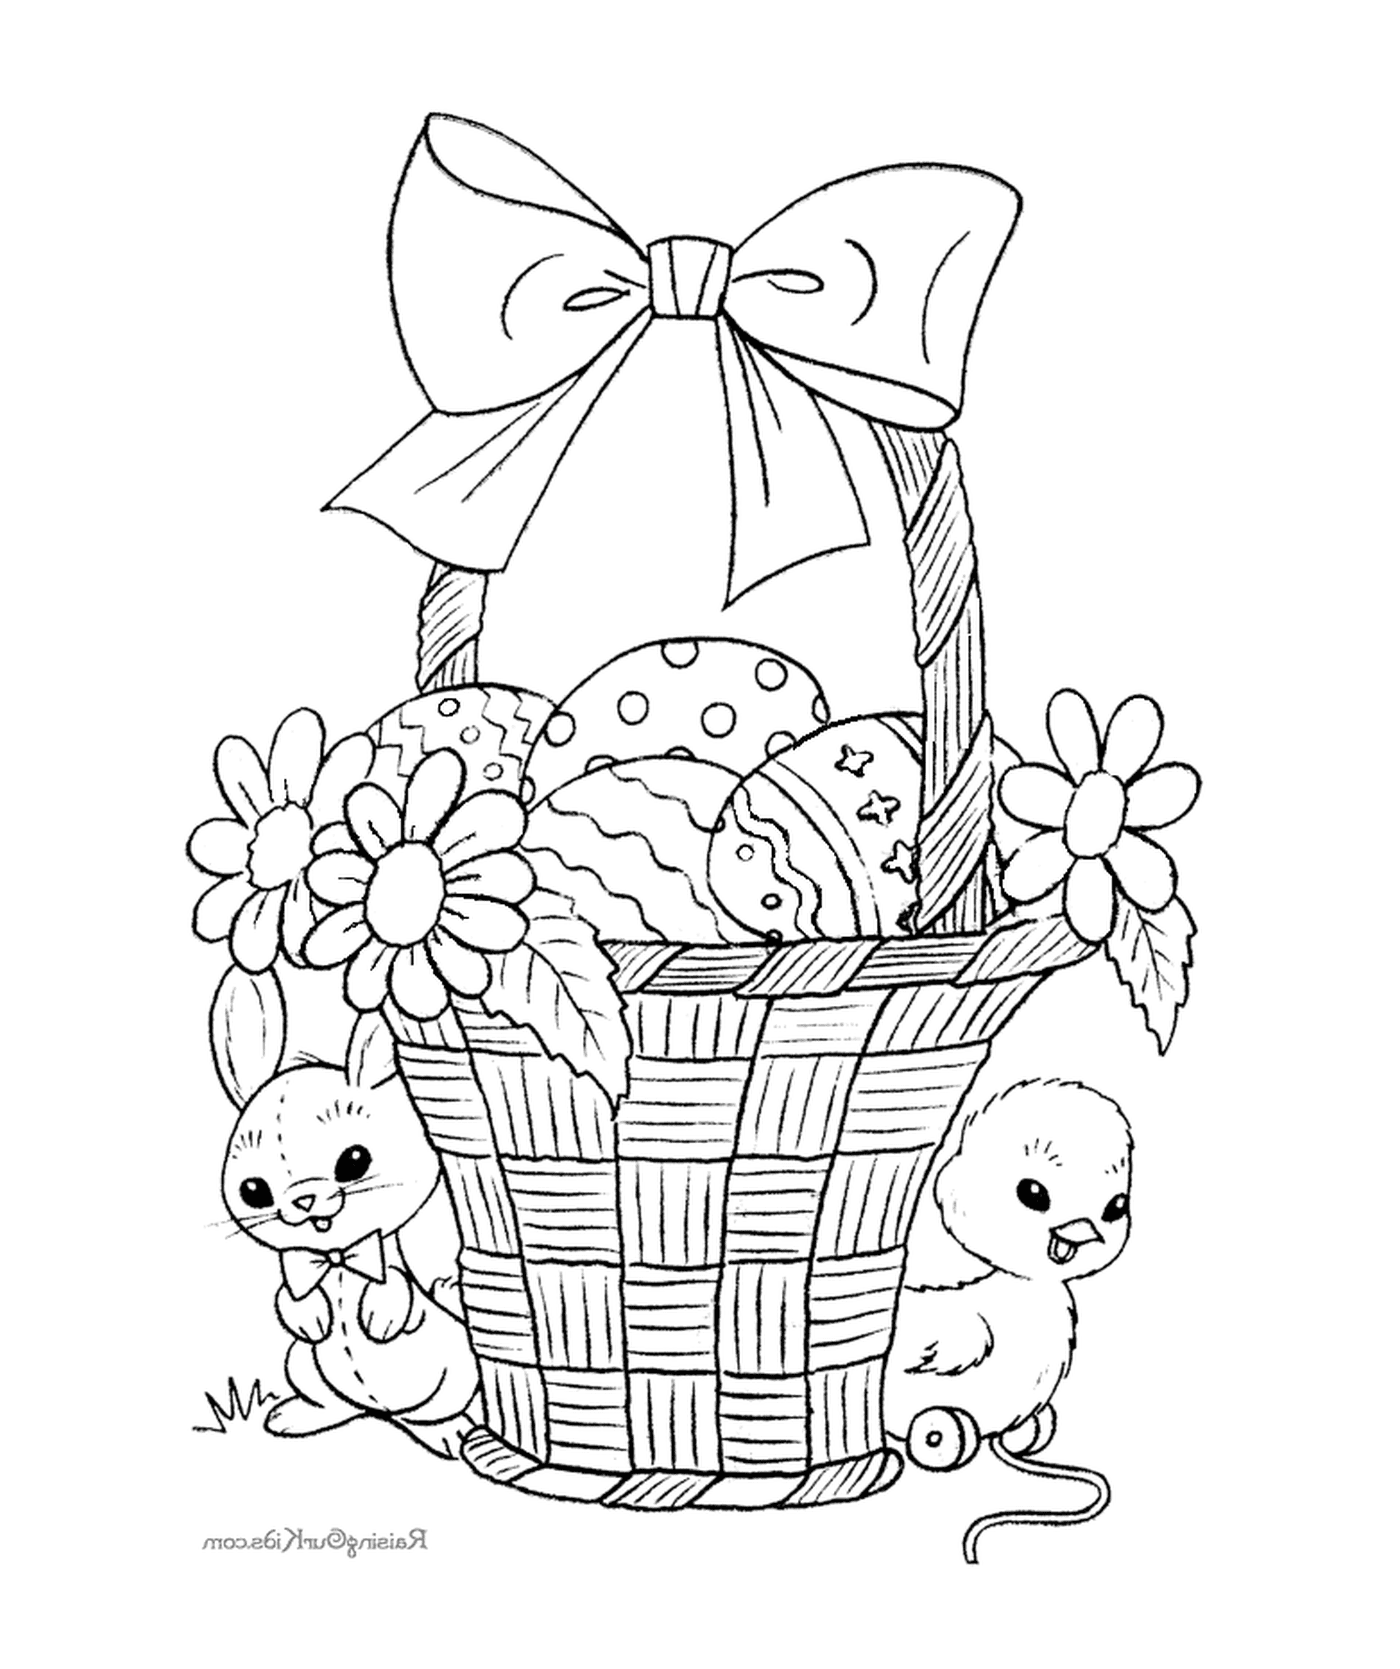  Una cesta llena de huevos de Pascua y conejos 